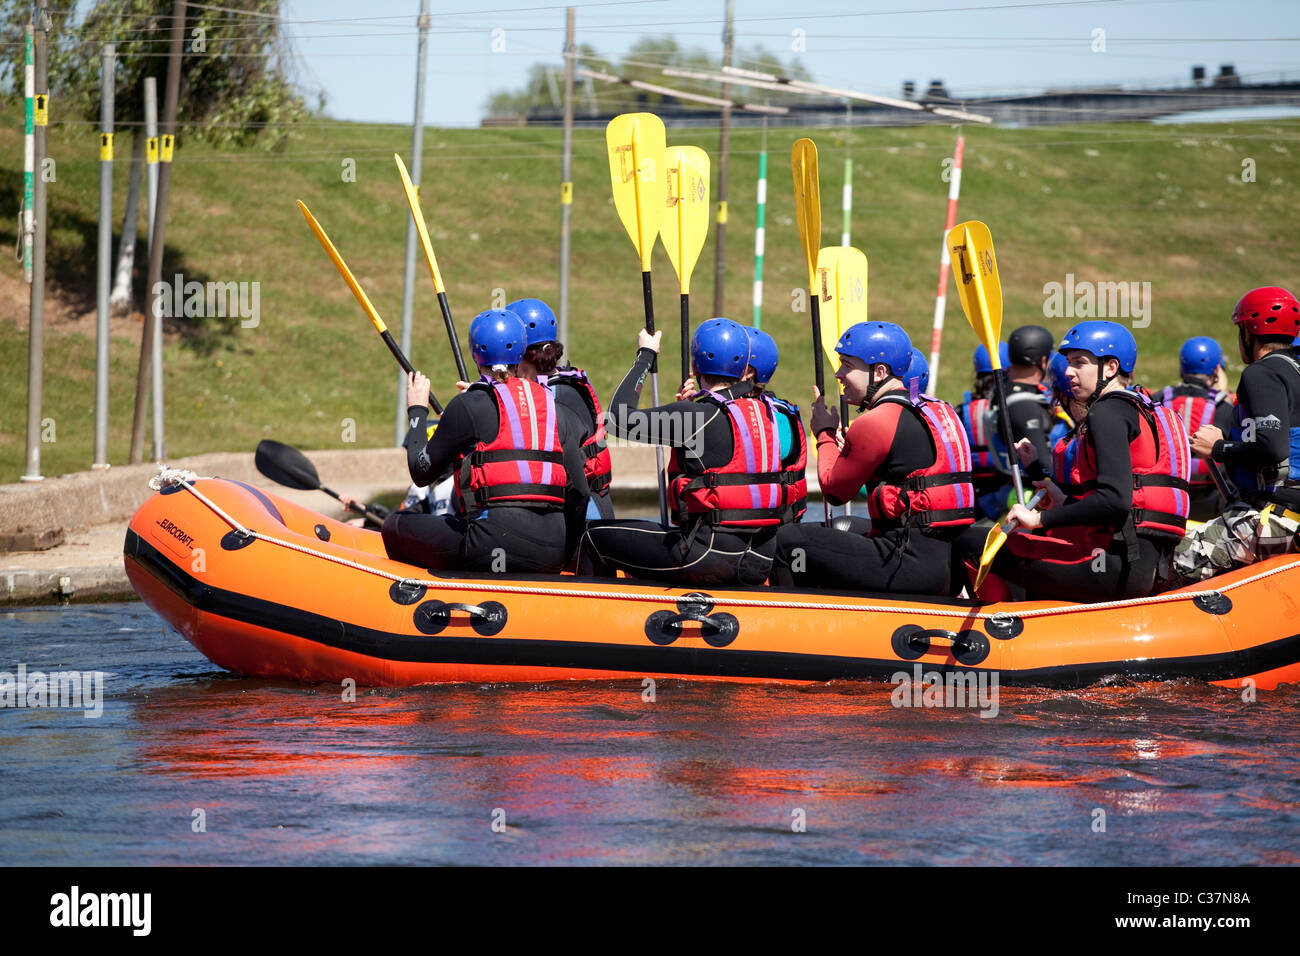 Rafting en eau au niveau national Water Sports Centre, Holme Pierrepoint, Nottingham England UK Banque D'Images